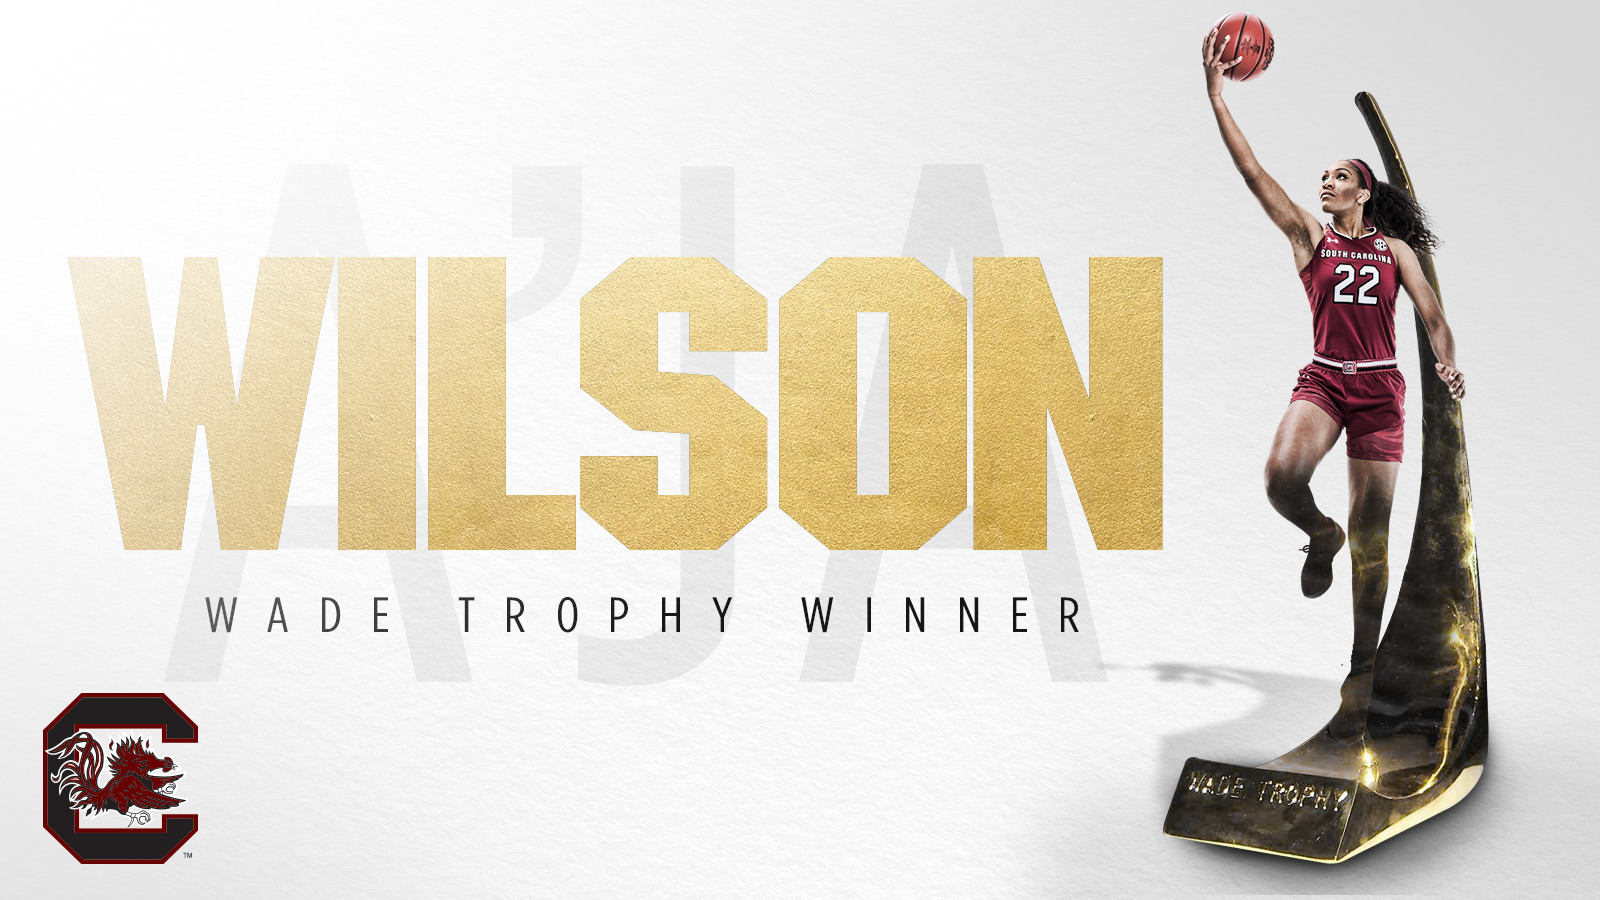 A'ja Wilson Wins 2018 Wade Trophy